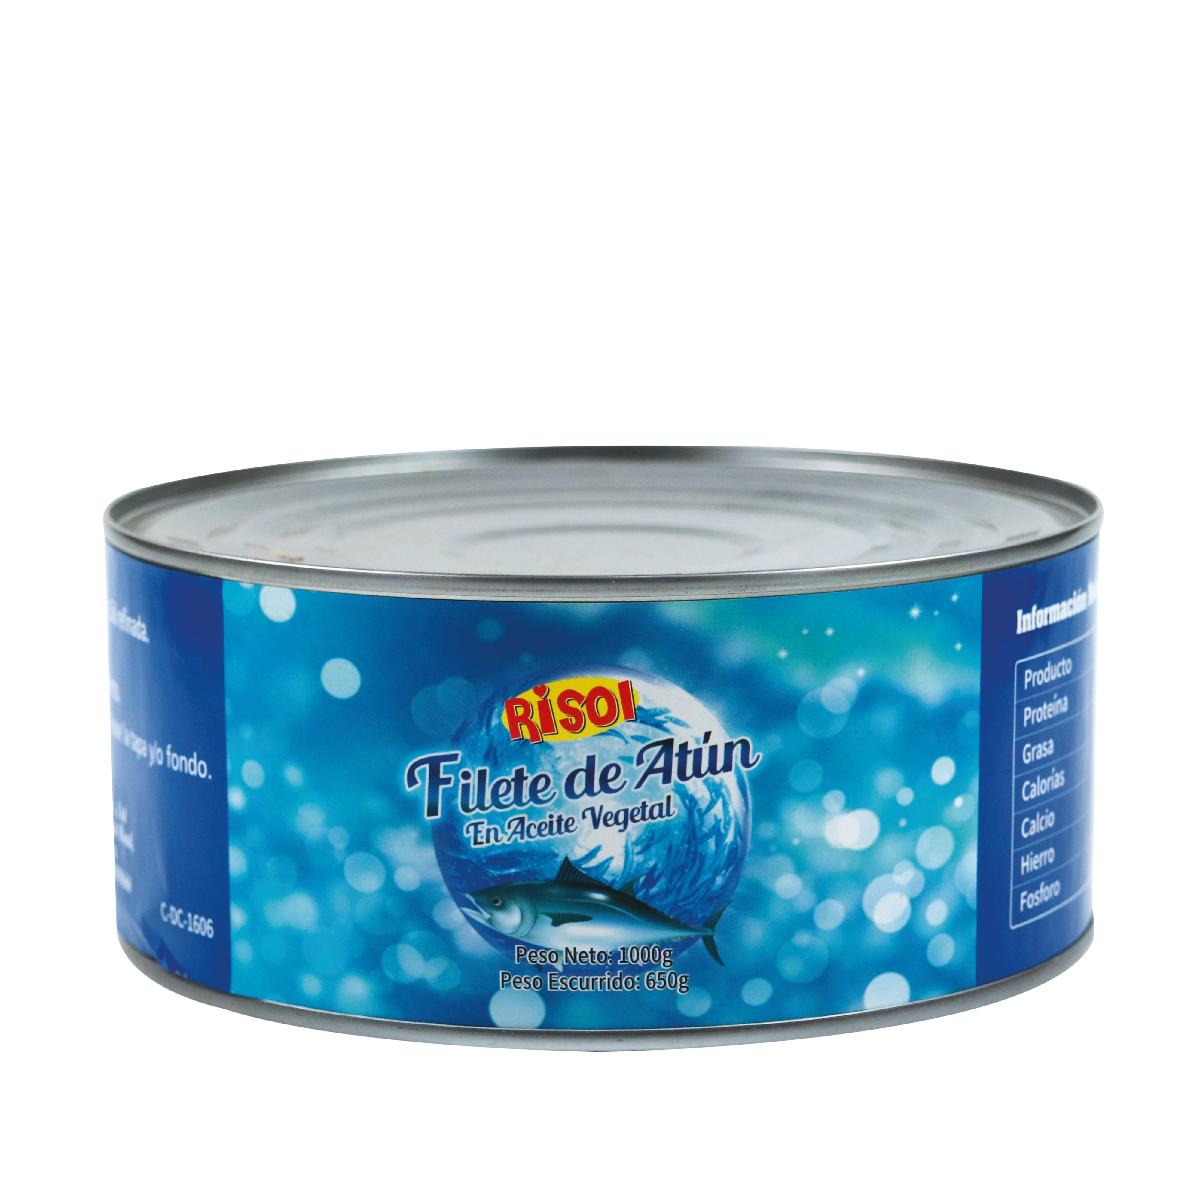 Tuna Water China Trade,Buy China Direct From Tuna Water Factories at